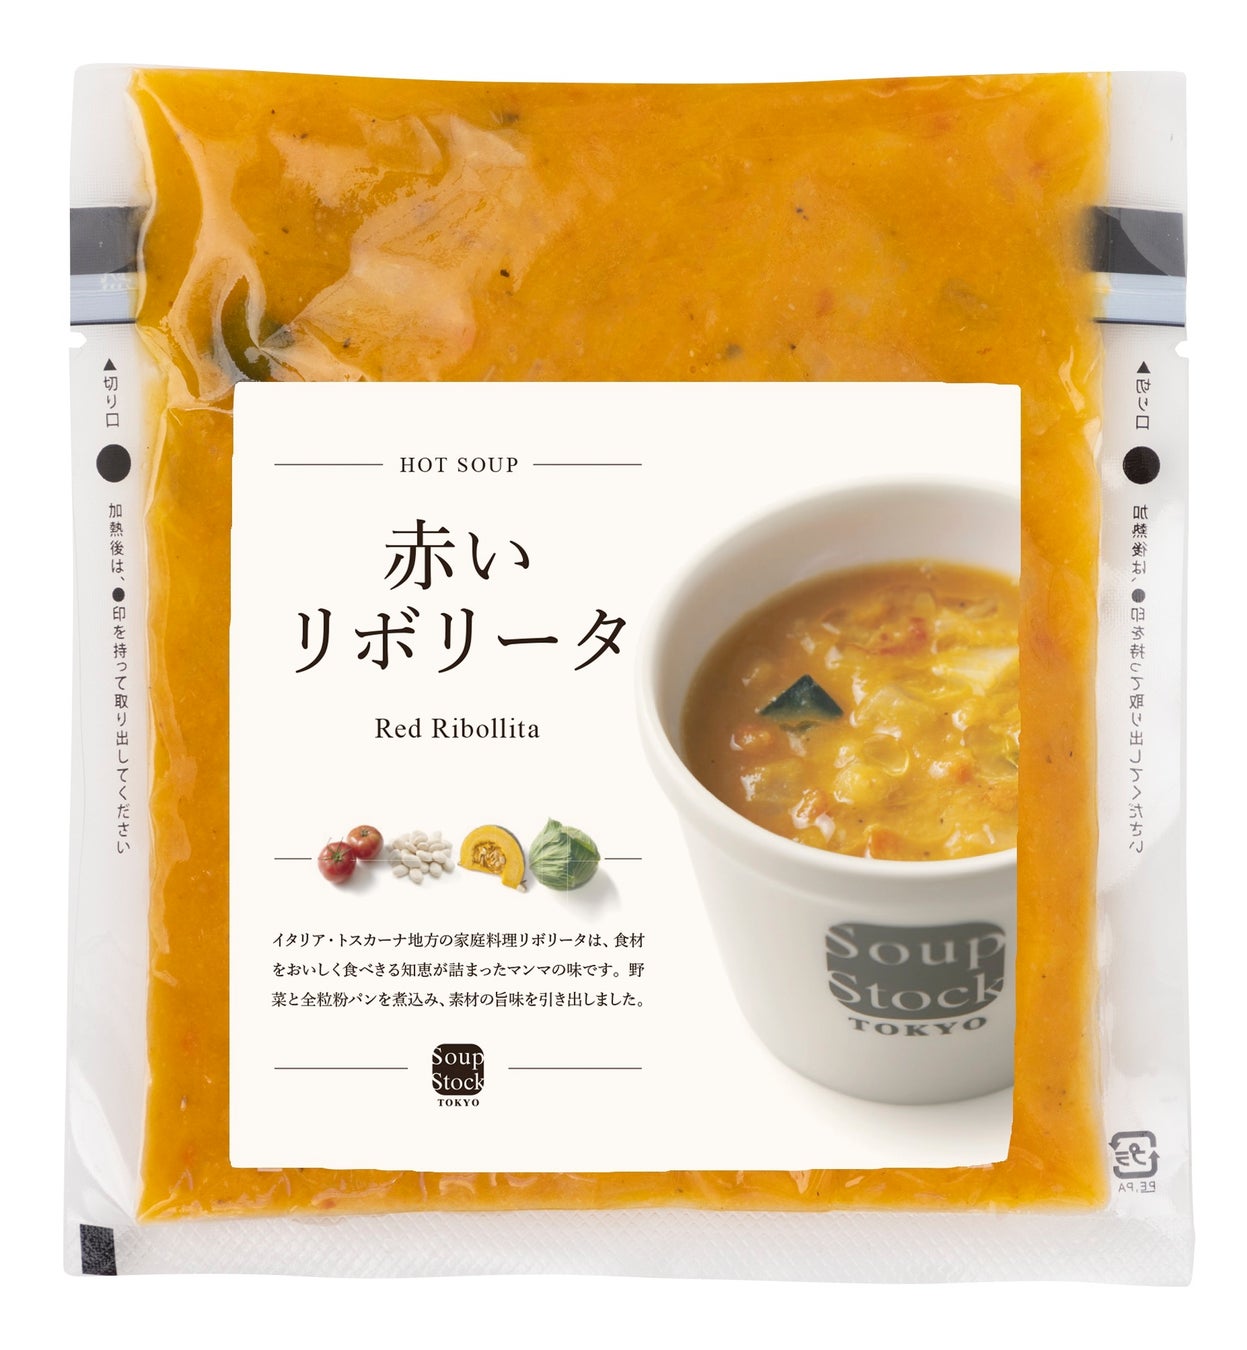 ロスパンを使ったイタリアの母の知恵を生かしたスープをSoup Stock Tokyoで販売開始のサブ画像2